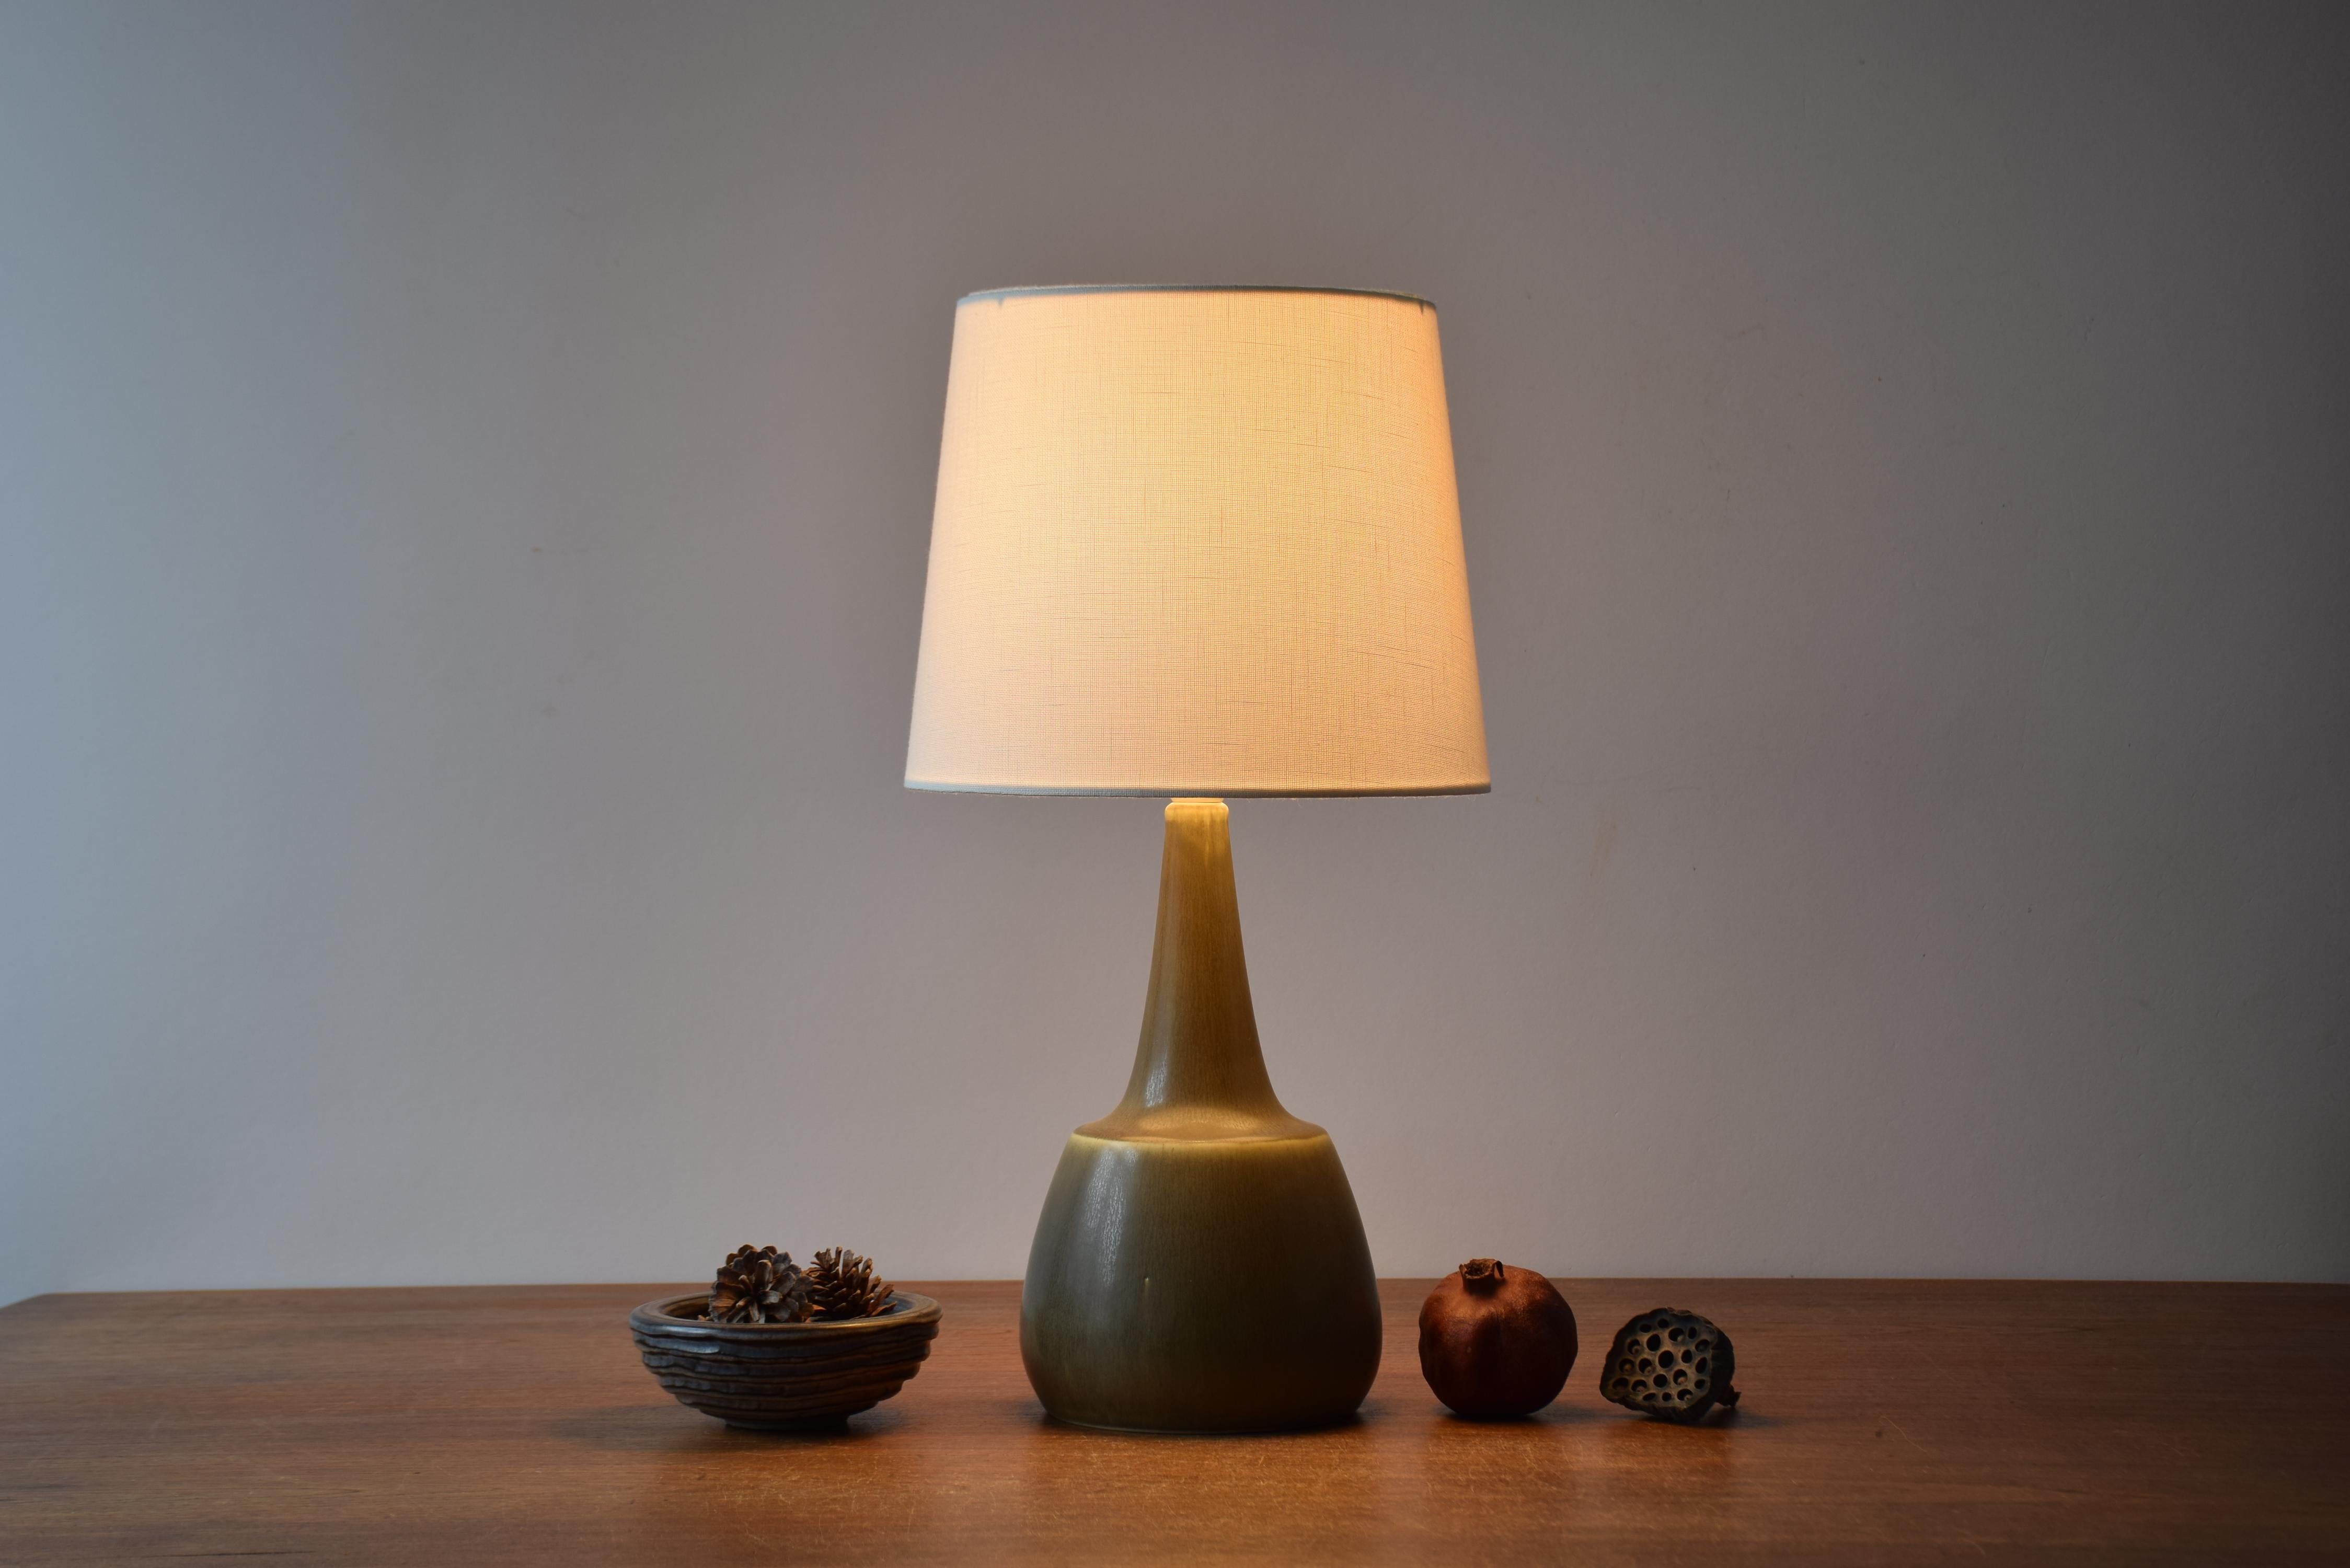 Lampe de table du milieu du siècle dernier de l'atelier de céramique danois Palshus. 
La lampe a été conçue par Per Linnemann-Schmidt et fabriquée à la fin des années 1950 ou 1960.

La lampe présente une glaçure vert olive / kaki HaresFur.

Un